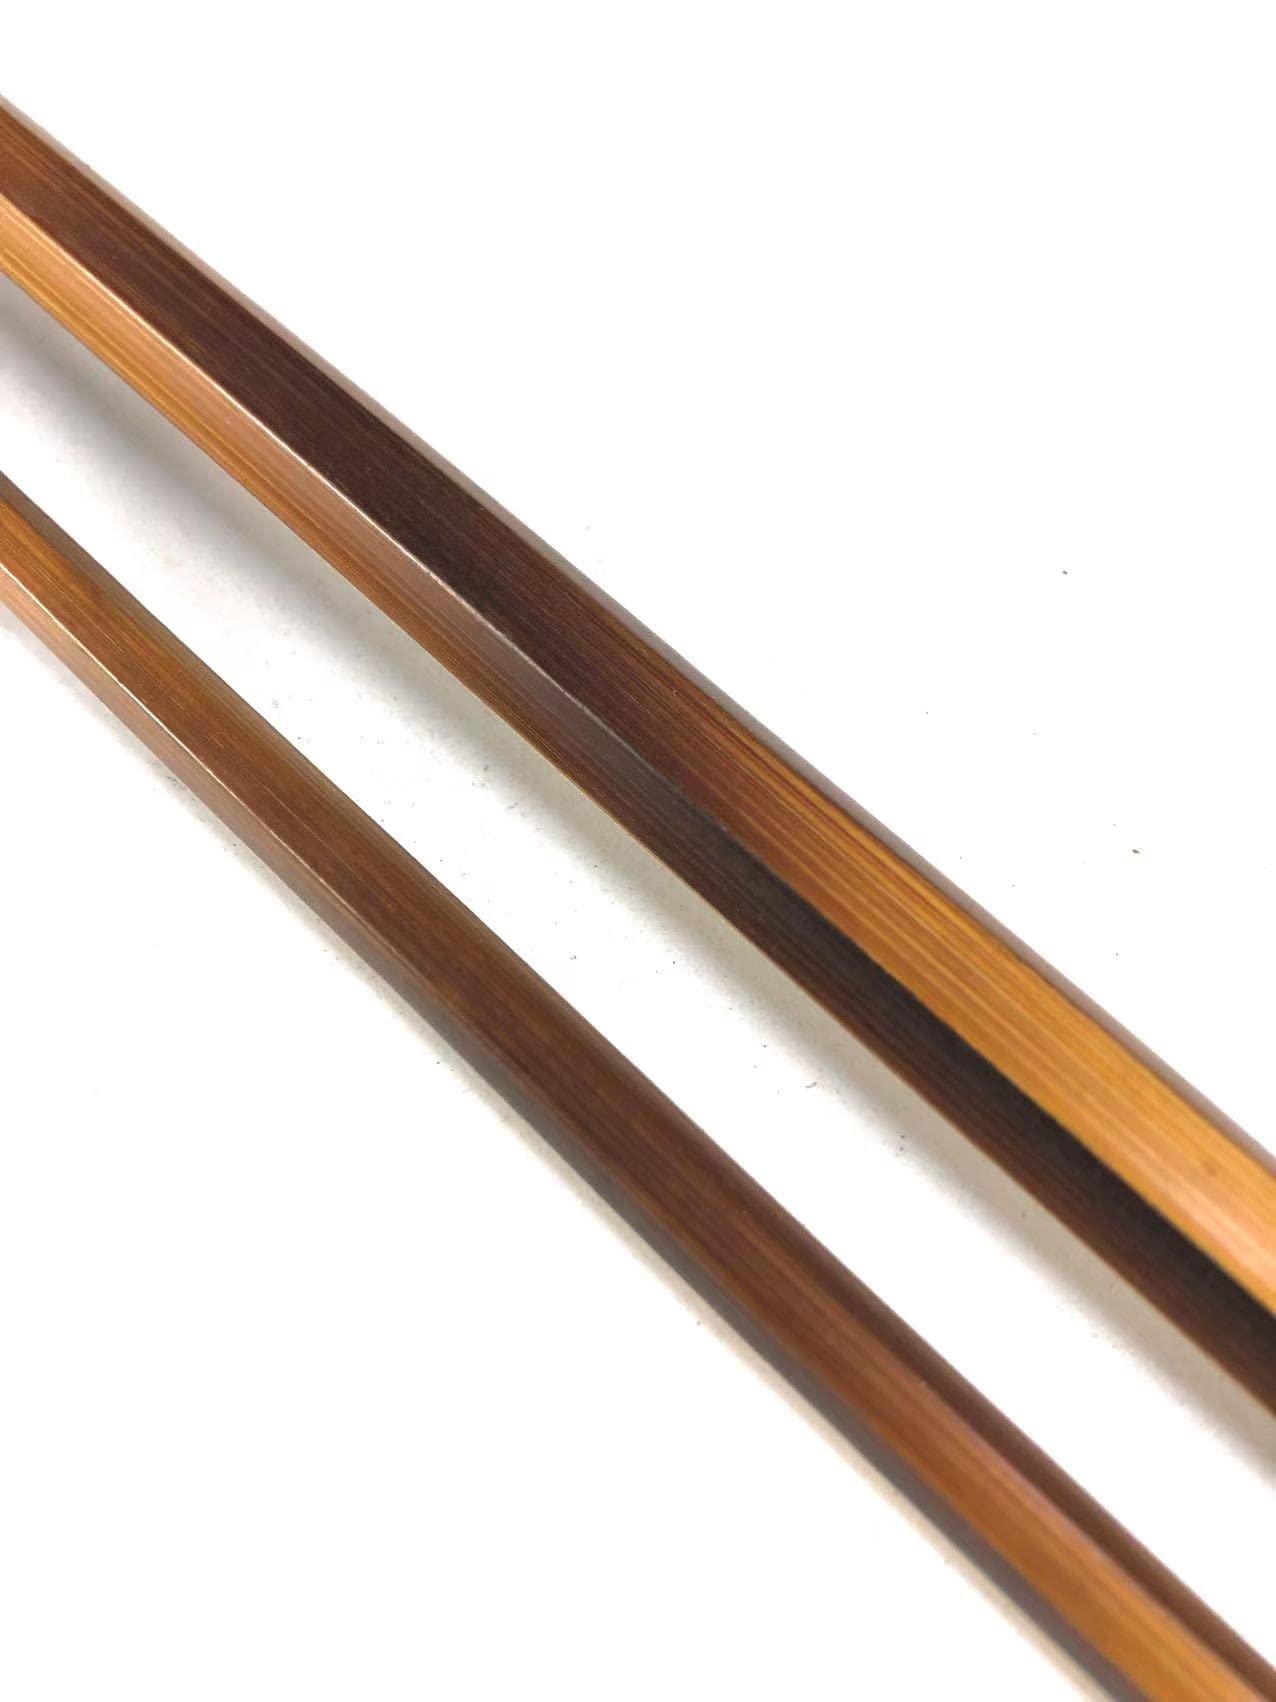 送料無料ZHUSRODS Flime Bamboo Fly Rod Blank 6 ft 8 ft 2-Piece 1-tipApply to Casting and Spinning Rods 8 ft 6 wt